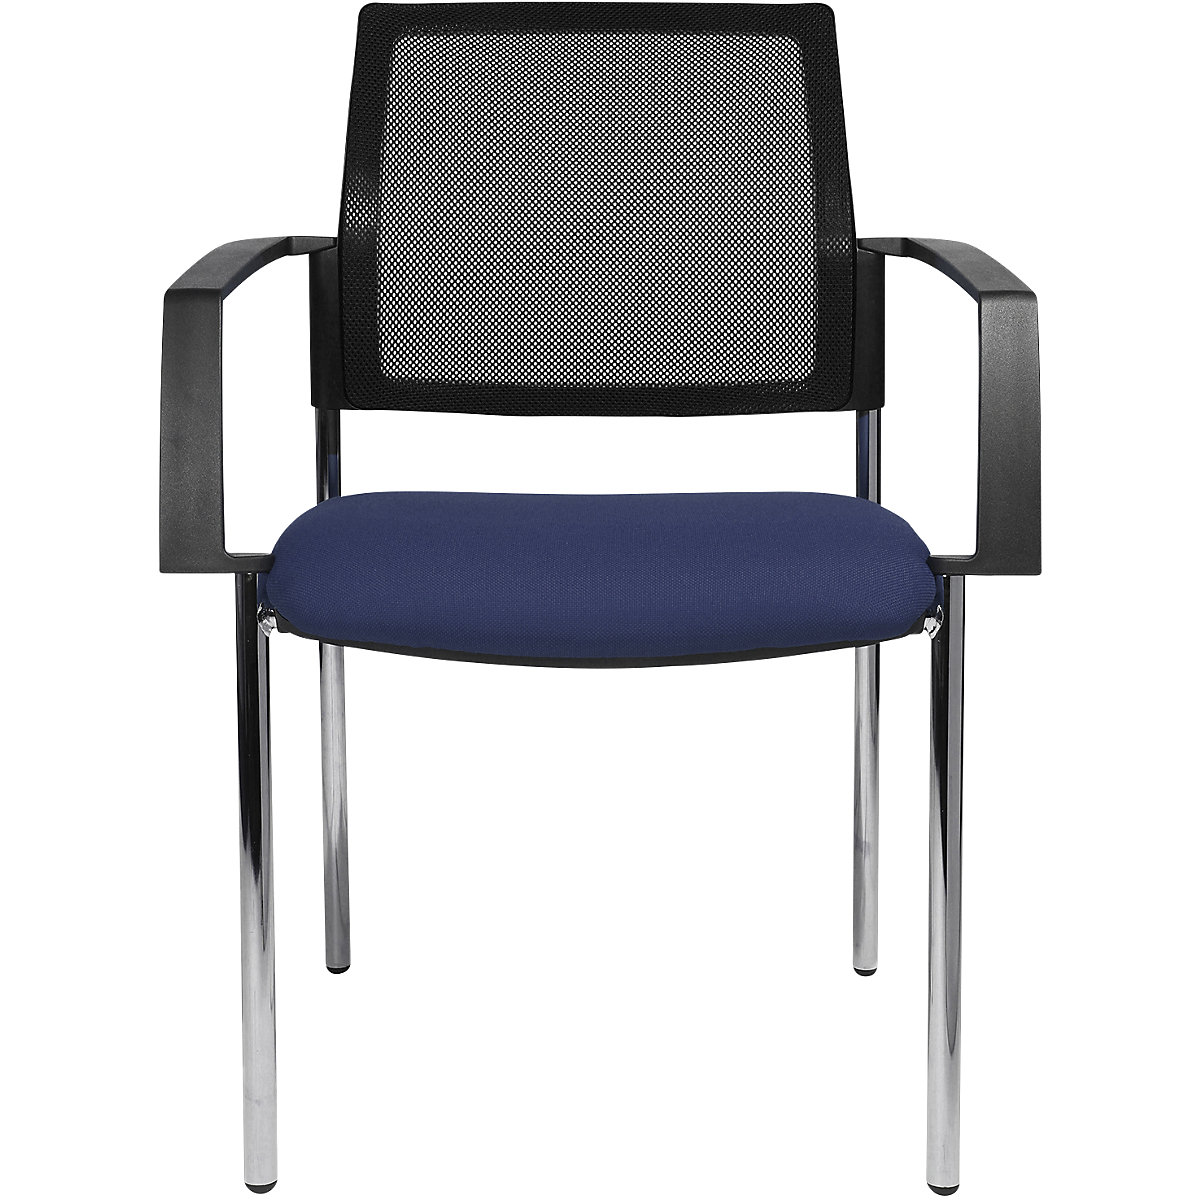 Mesh stapelstoel – Topstar, 4 stoelpoten, VE = 2 stuks, zitting blauw, frame chroom-3